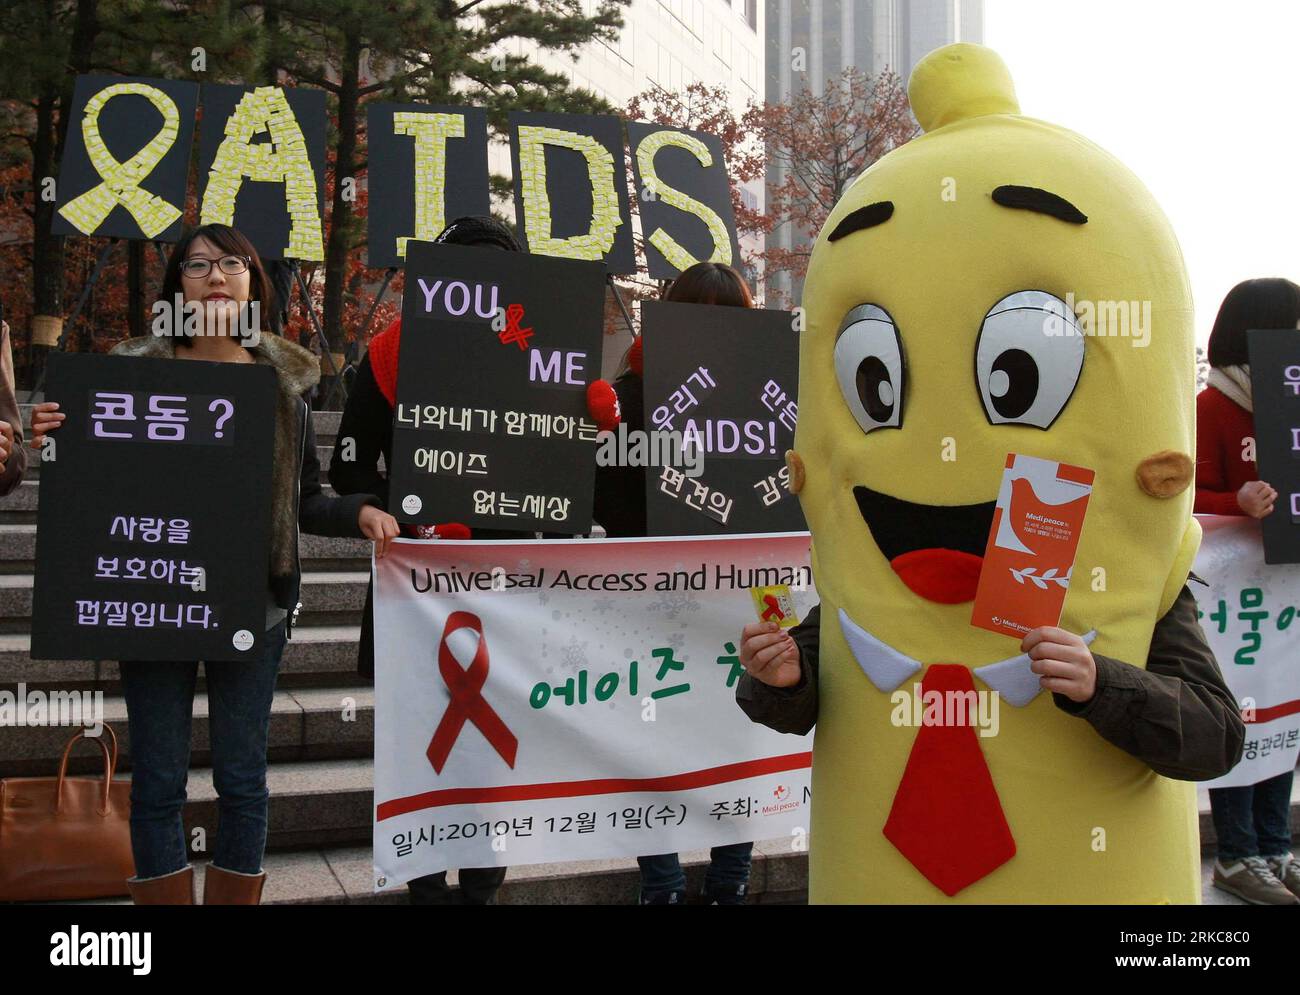 Bildnummer: 54694620 Datum: 01.12.2010 Copyright: imago/Xinhua (101201) - SEOUL, 1 dicembre 2010 (Xinhua) -- partecipa a un evento per promuovere la consapevolezza dell'AIDS alla giornata mondiale dell'AIDS a Seoul, capitale della Corea del Sud, 1 dicembre 2010. La giornata mondiale dell'AIDS mira a sensibilizzare l'opinione pubblica per affrontare i pregiudizi dell'AIDS e contribuire a fermare la diffusione dell'AIDS. (Xinhua/Park Jin Hee) (zyw) COREA DEL SUD-SEOUL-AIDS DAY PUBLICATIONxNOTxINxCHN Gesellschaft Gesundheit AIDS Weltaidstag Aidstag kbdig xcb 2010 quer Bildnummer 54694620 Data 01 12 2010 Copyright Imago XINHUA Seoul DEC 1 2010 XINHUA partecipa all'evento per promuovere gli Awareni Foto Stock